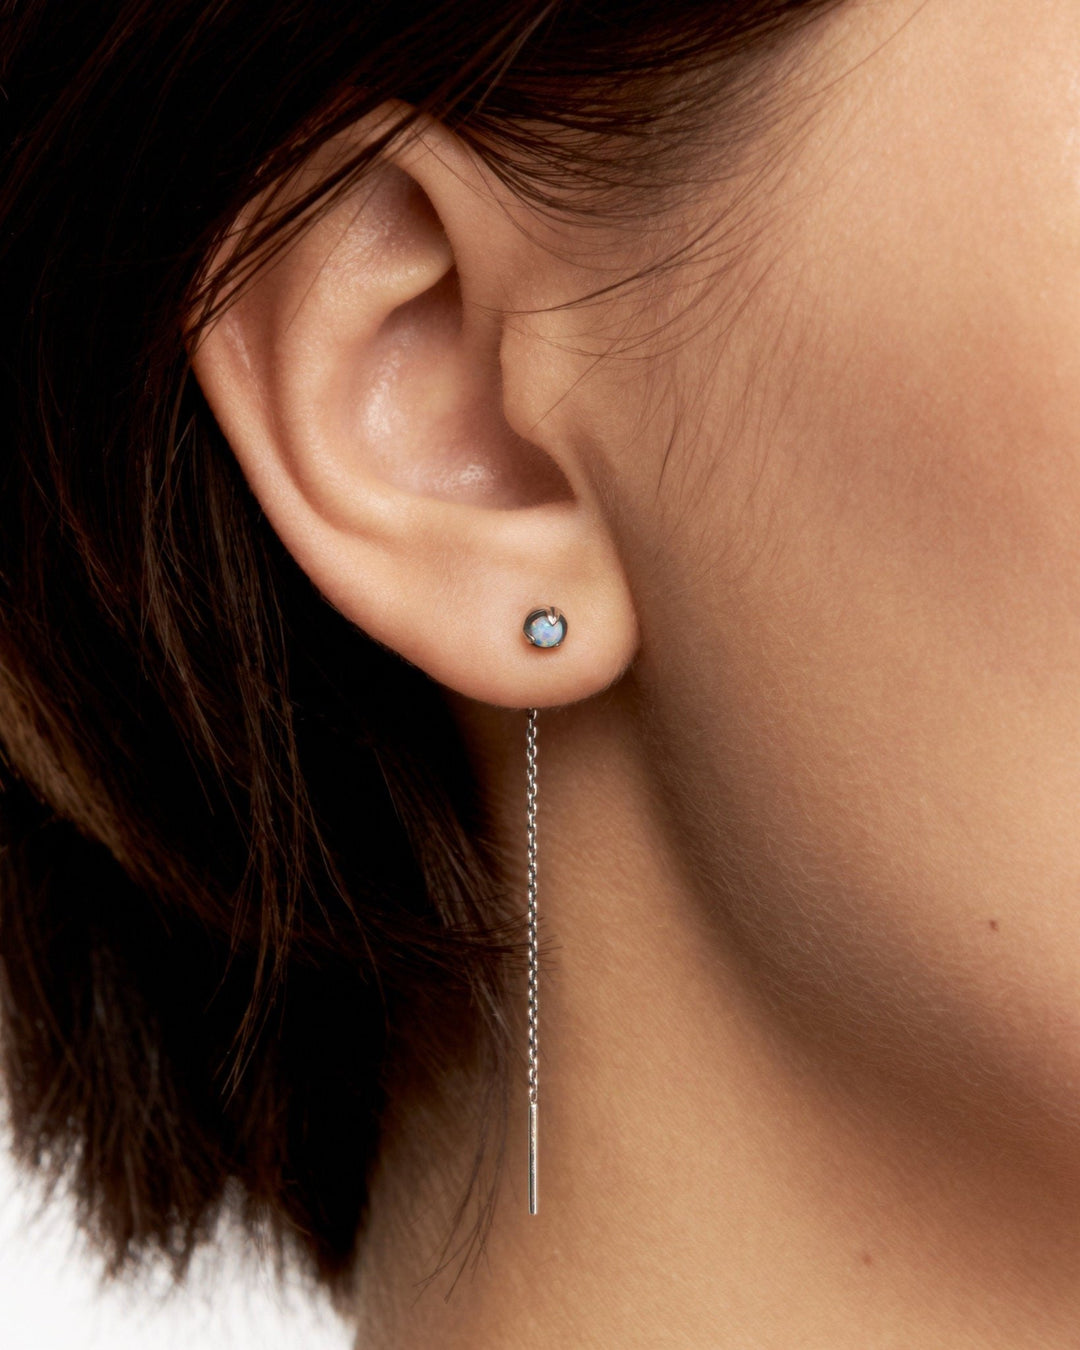 Opal Threader Earrings Sterling Silver Celestial Dangle Earrings Chain Earrings Opal Jewelry - CHN006O17 - Revelmy